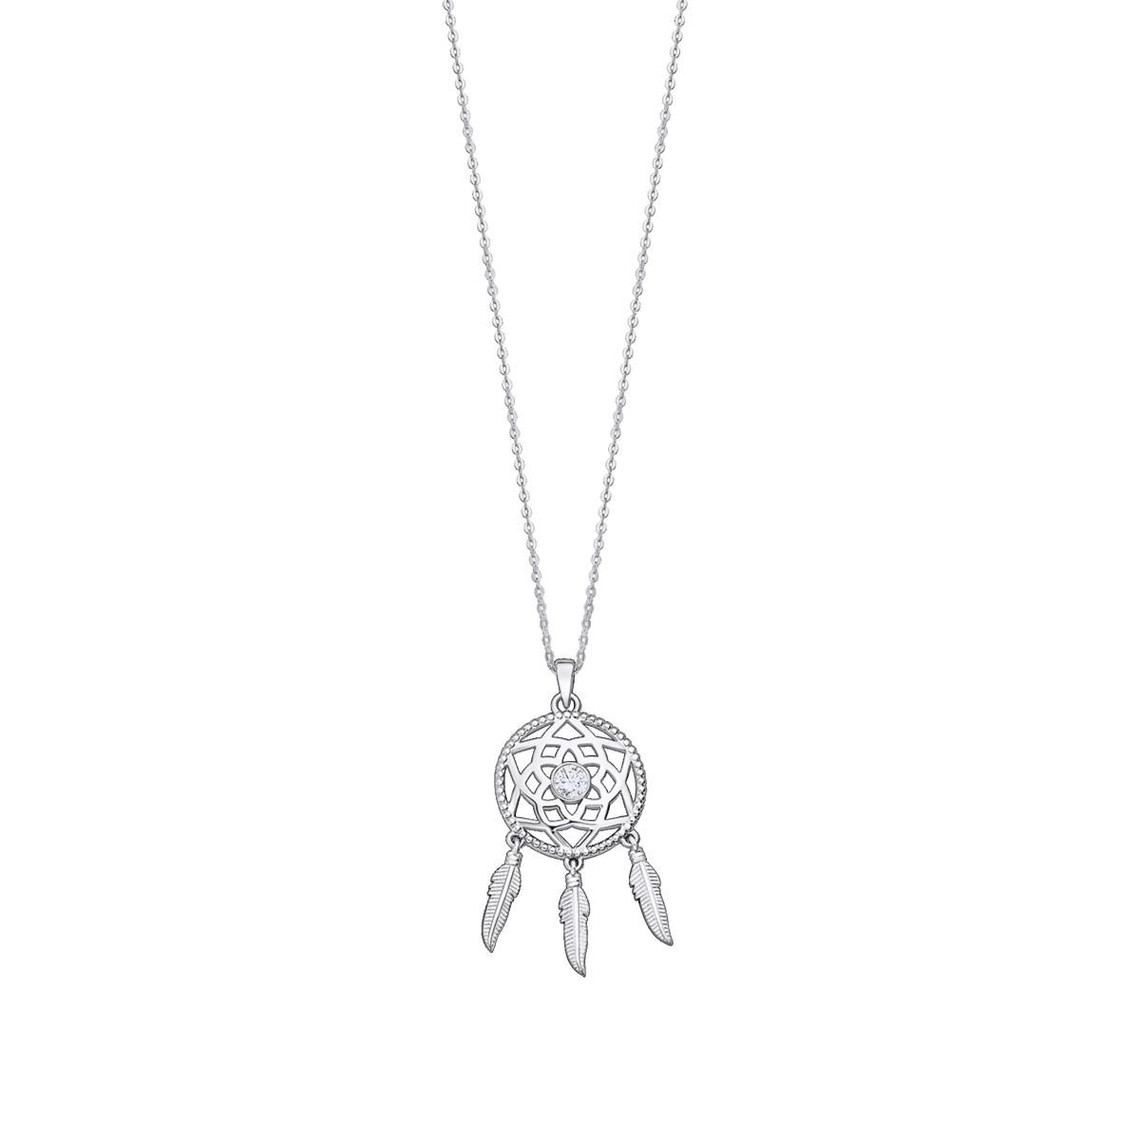 collier femme lotus silver - lp3000-1-1 argent